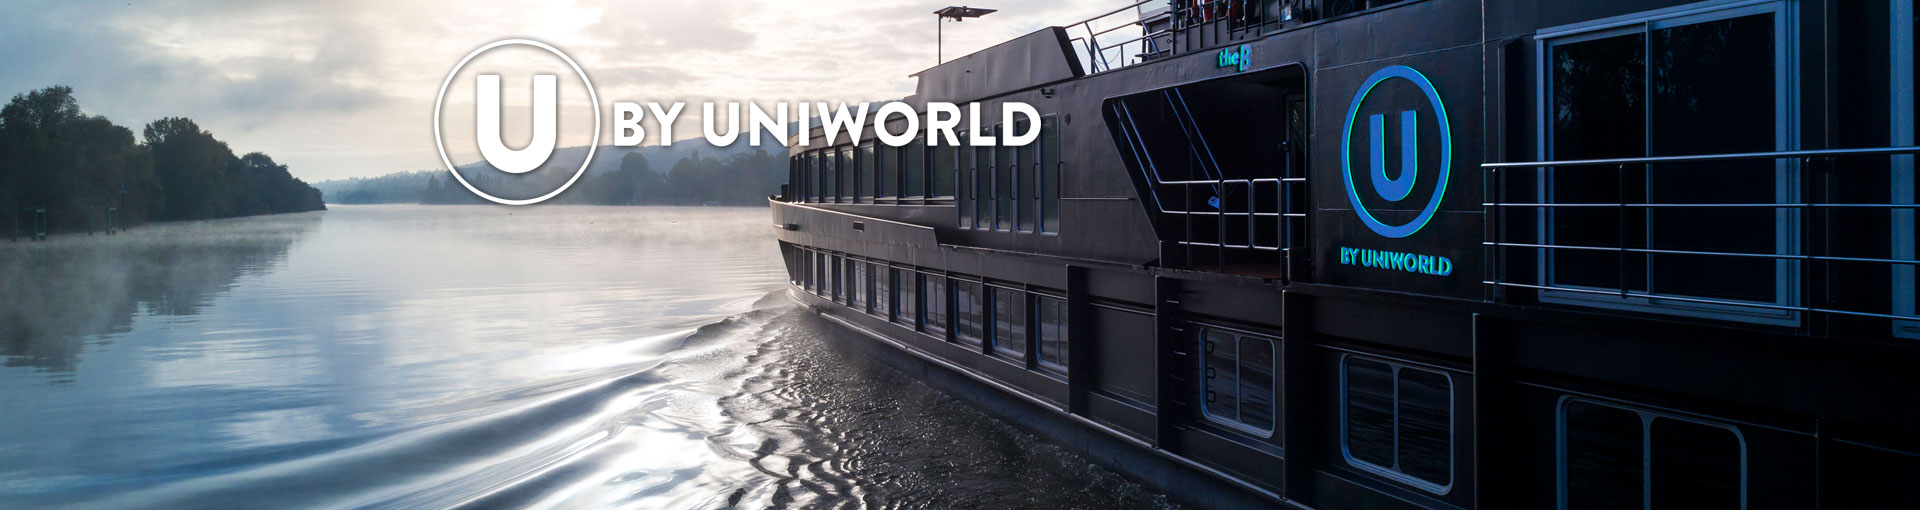 uniworld cruises login